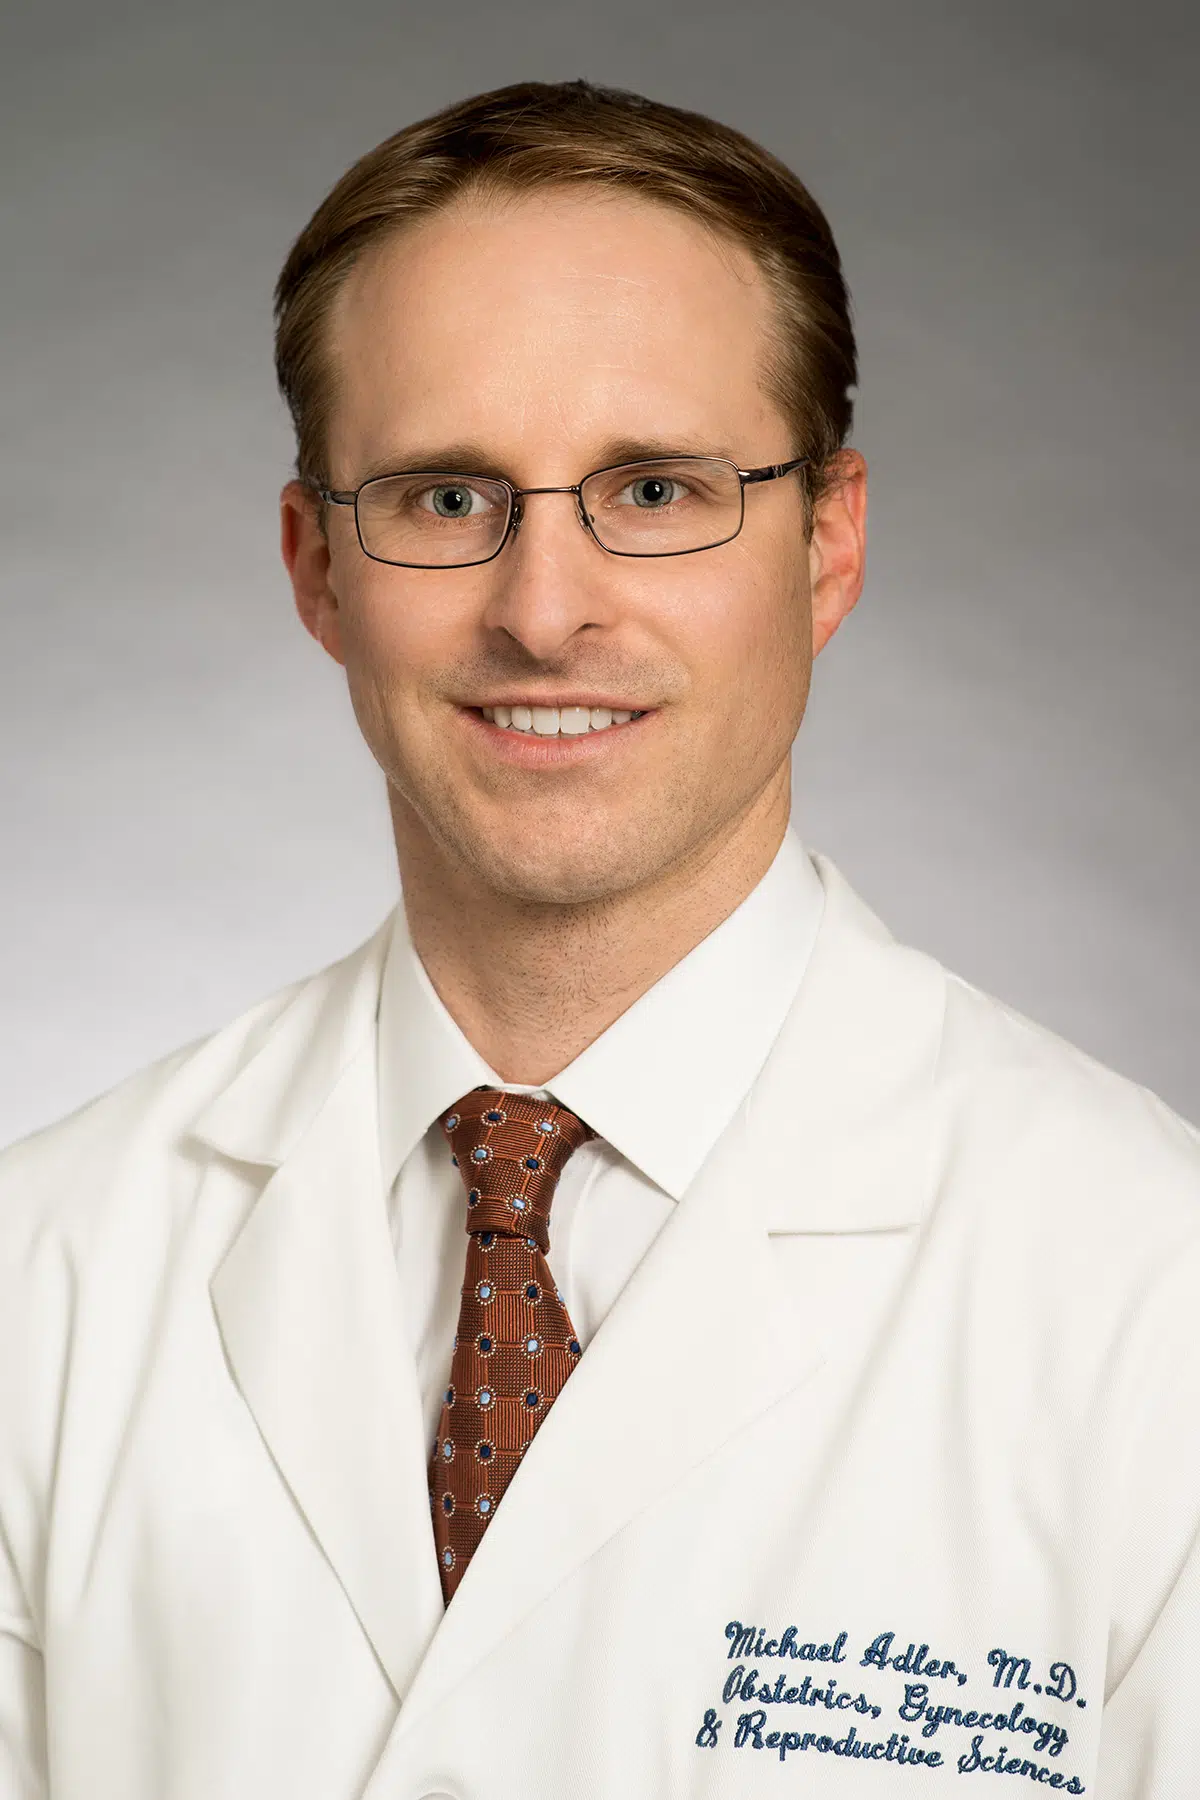 Michael T. Adler  Doctor in Houston, Texas